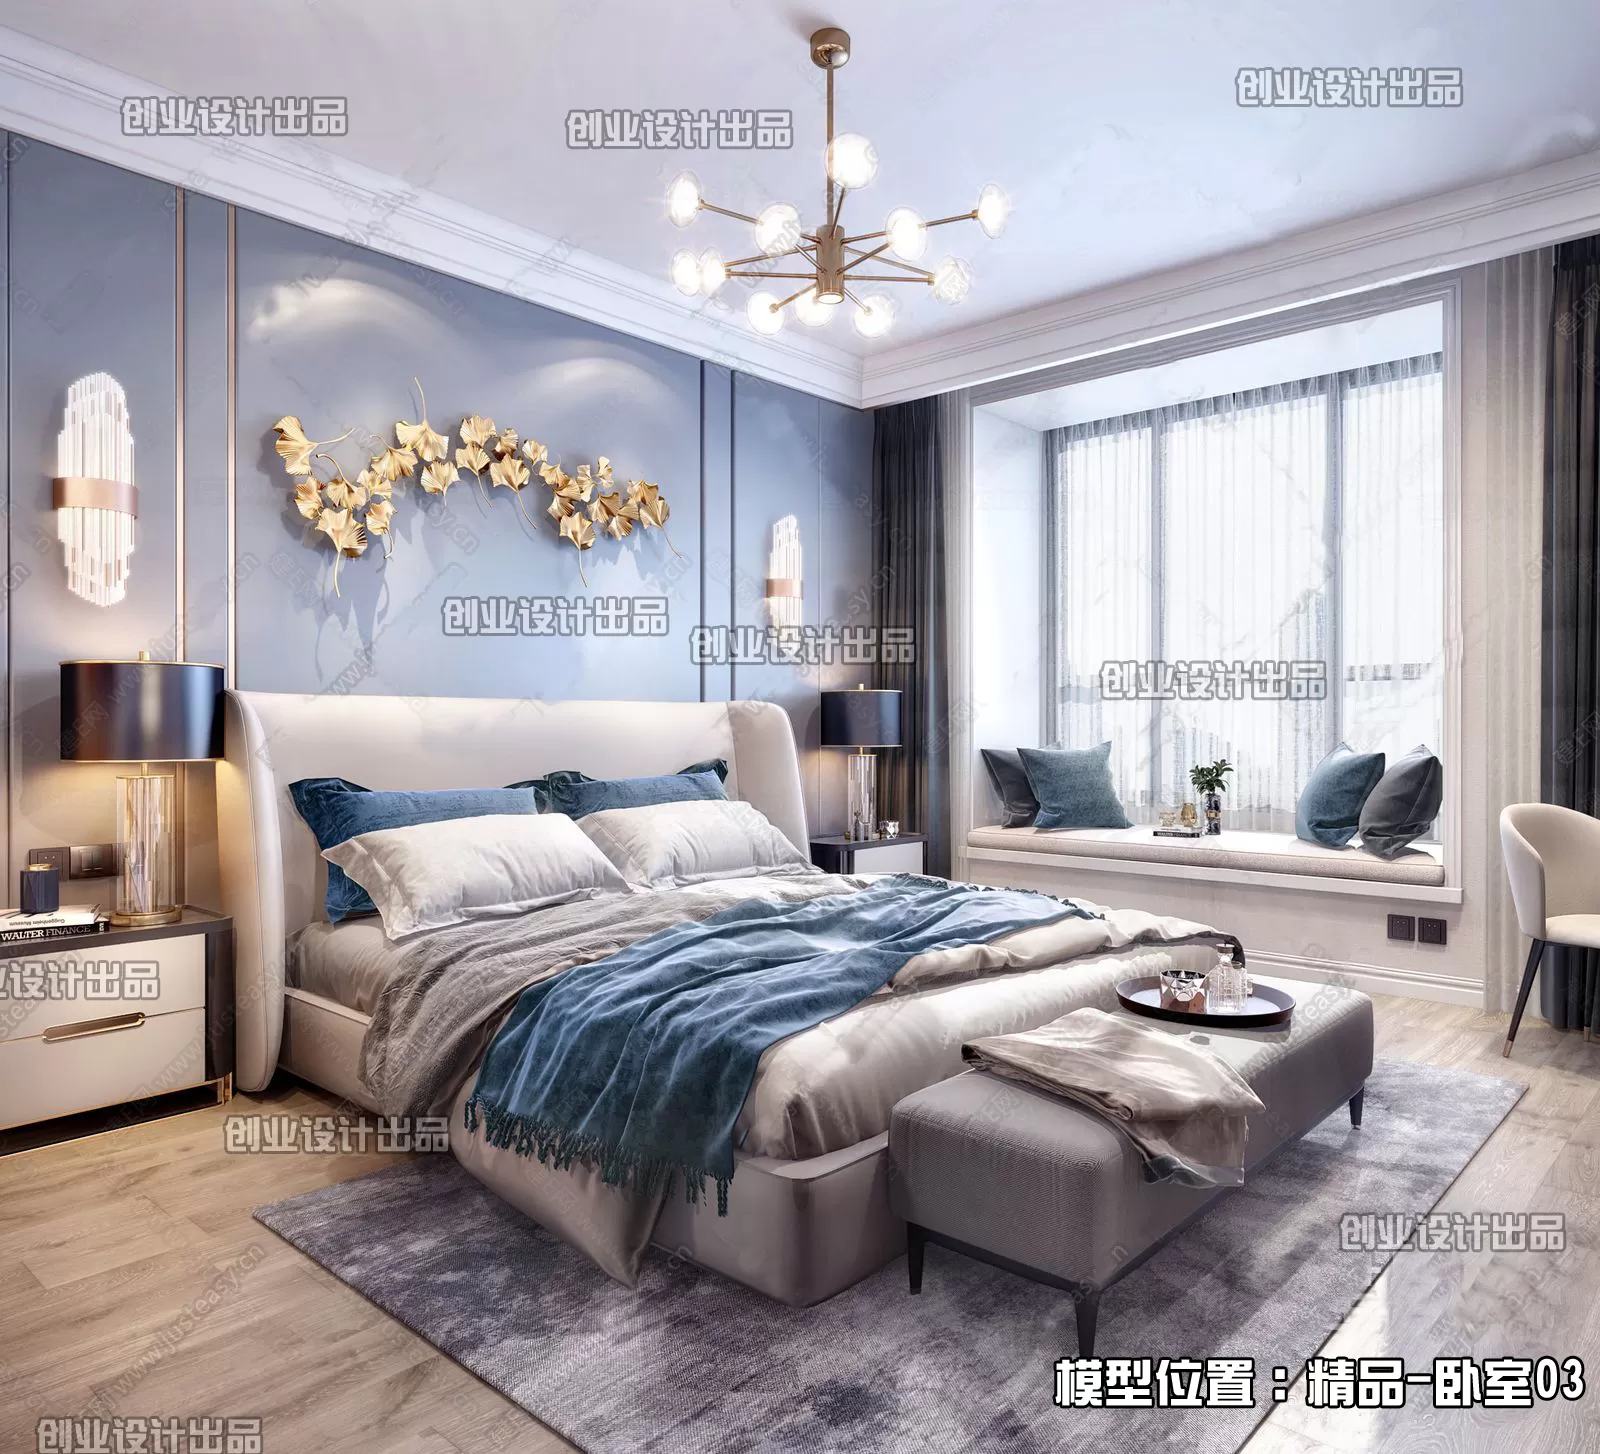 Bedroom – Modern Interior Design – 3D Models – 149